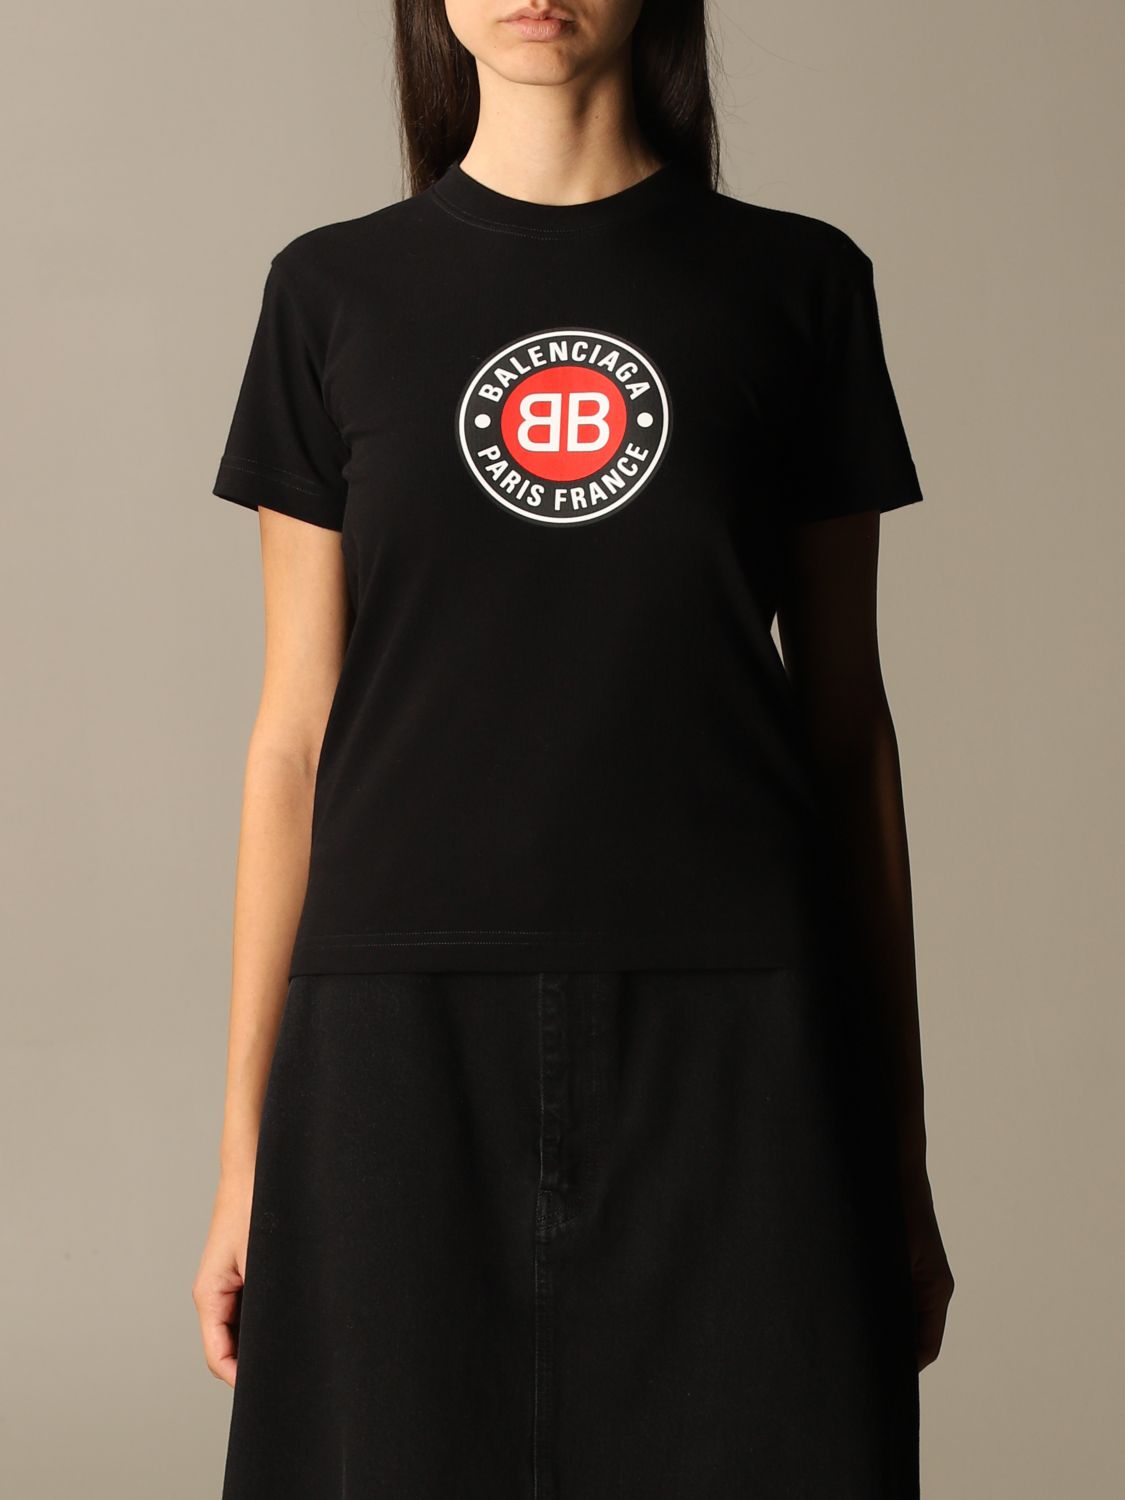 BALENCIAGA: vintage club t-shirt in cotton - Black | Balenciaga t-shirt